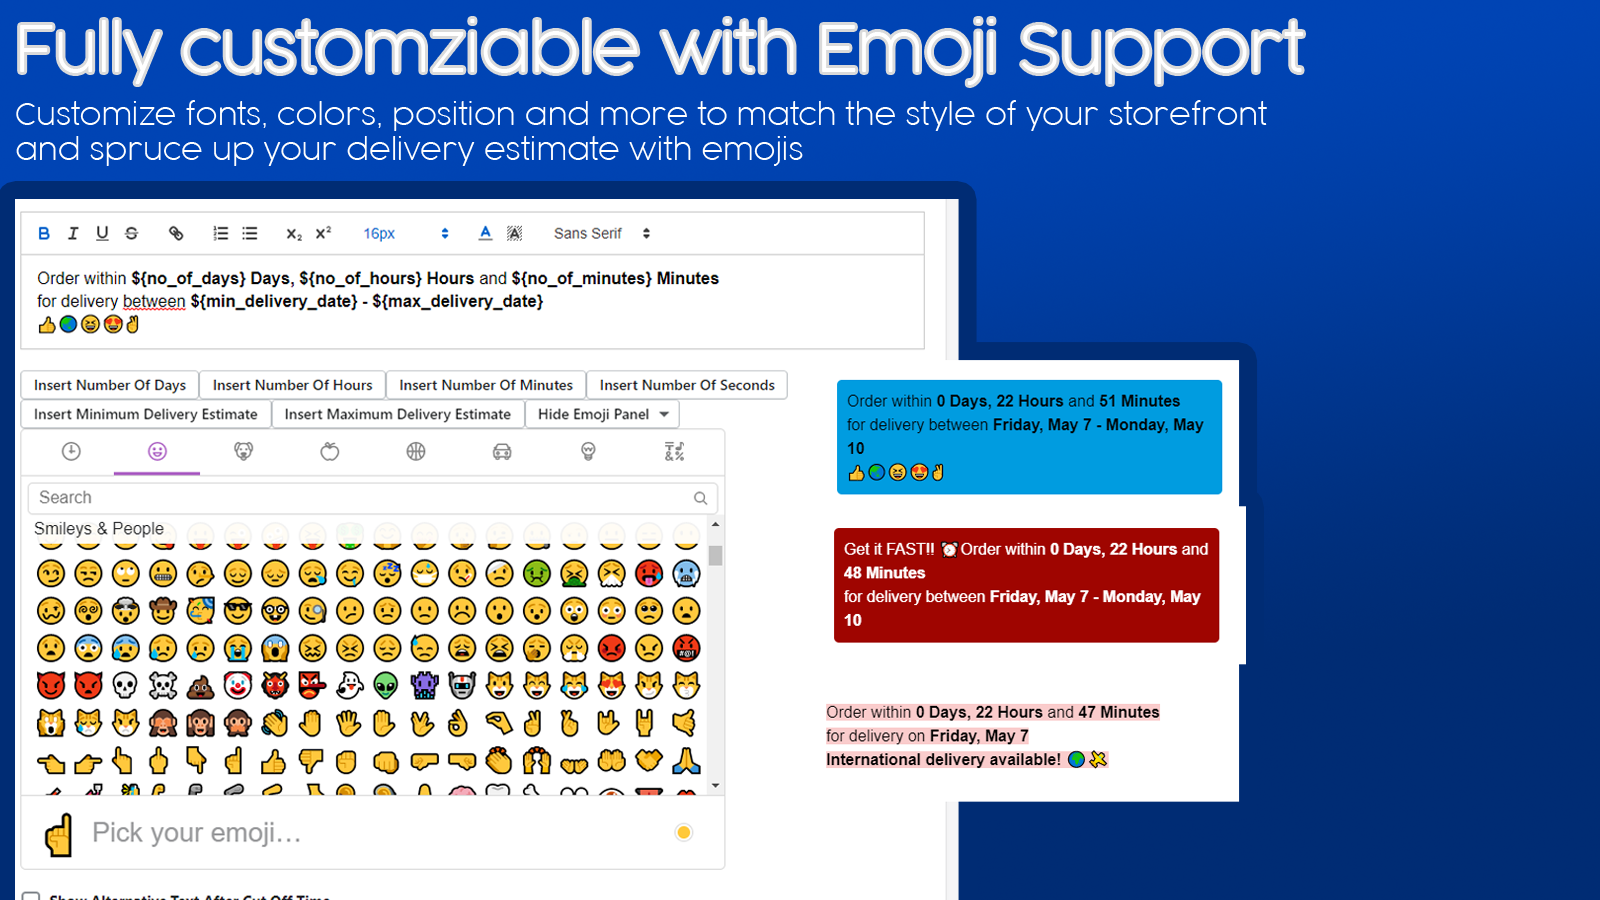 Personalización completa con soporte de emojis.